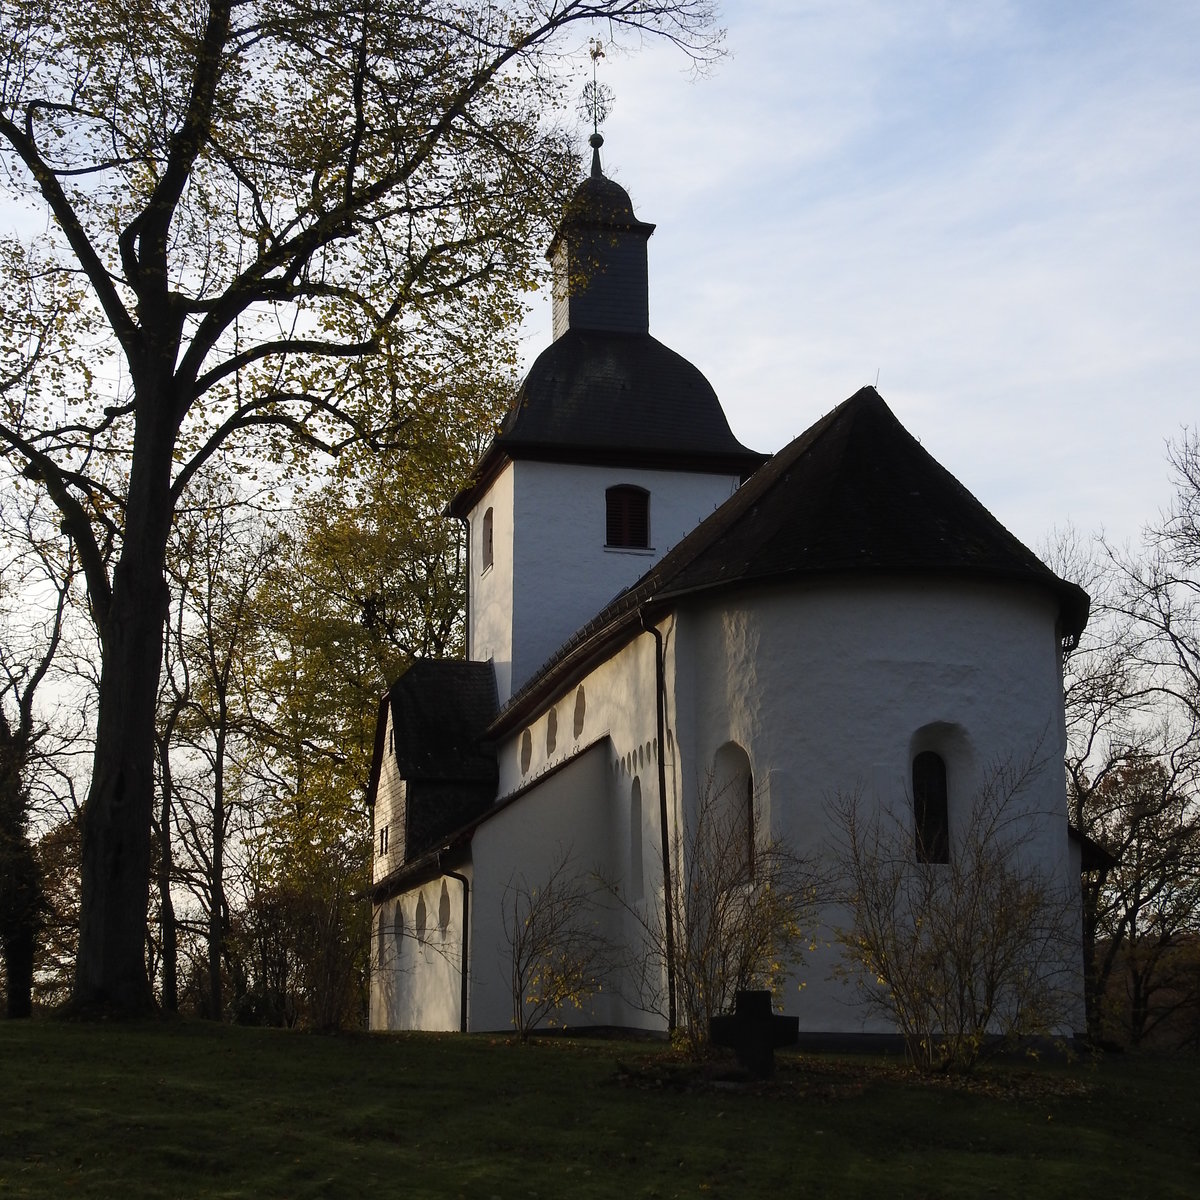 ALMERSBACH/WESTERWALD-EV. PFARRKIRCHE
Sie ist eine der ältesten im WESTERWALD,als romanische Basilika 1199 erstmals erwähnt...
Als sie entstand,führte hier ein wichtiger Handels- und Pilgerweg vorbei.Zum Schutz der Furt durch die WIED
erhielt Almersbach 1357 von KAISER KARL IV. die Stadtrechte.
Im 13. Jhdt. erfolgte die Ausmalung der Kirche,1561 wurde die Gemeinde LUTHERISCH,1605 dann
REFORMIERT,mit Übermalung der Wandbilder-ab 1669 nutzten beide ev. Konfessionen die Kirche,bis
1819 Almersbach UNIERT wurde-die alten Fresken wurden 1915 wieder freigelegt....
Ein ganz besonderer und wunderschöner Kirchenbau,am 14.11.2017...